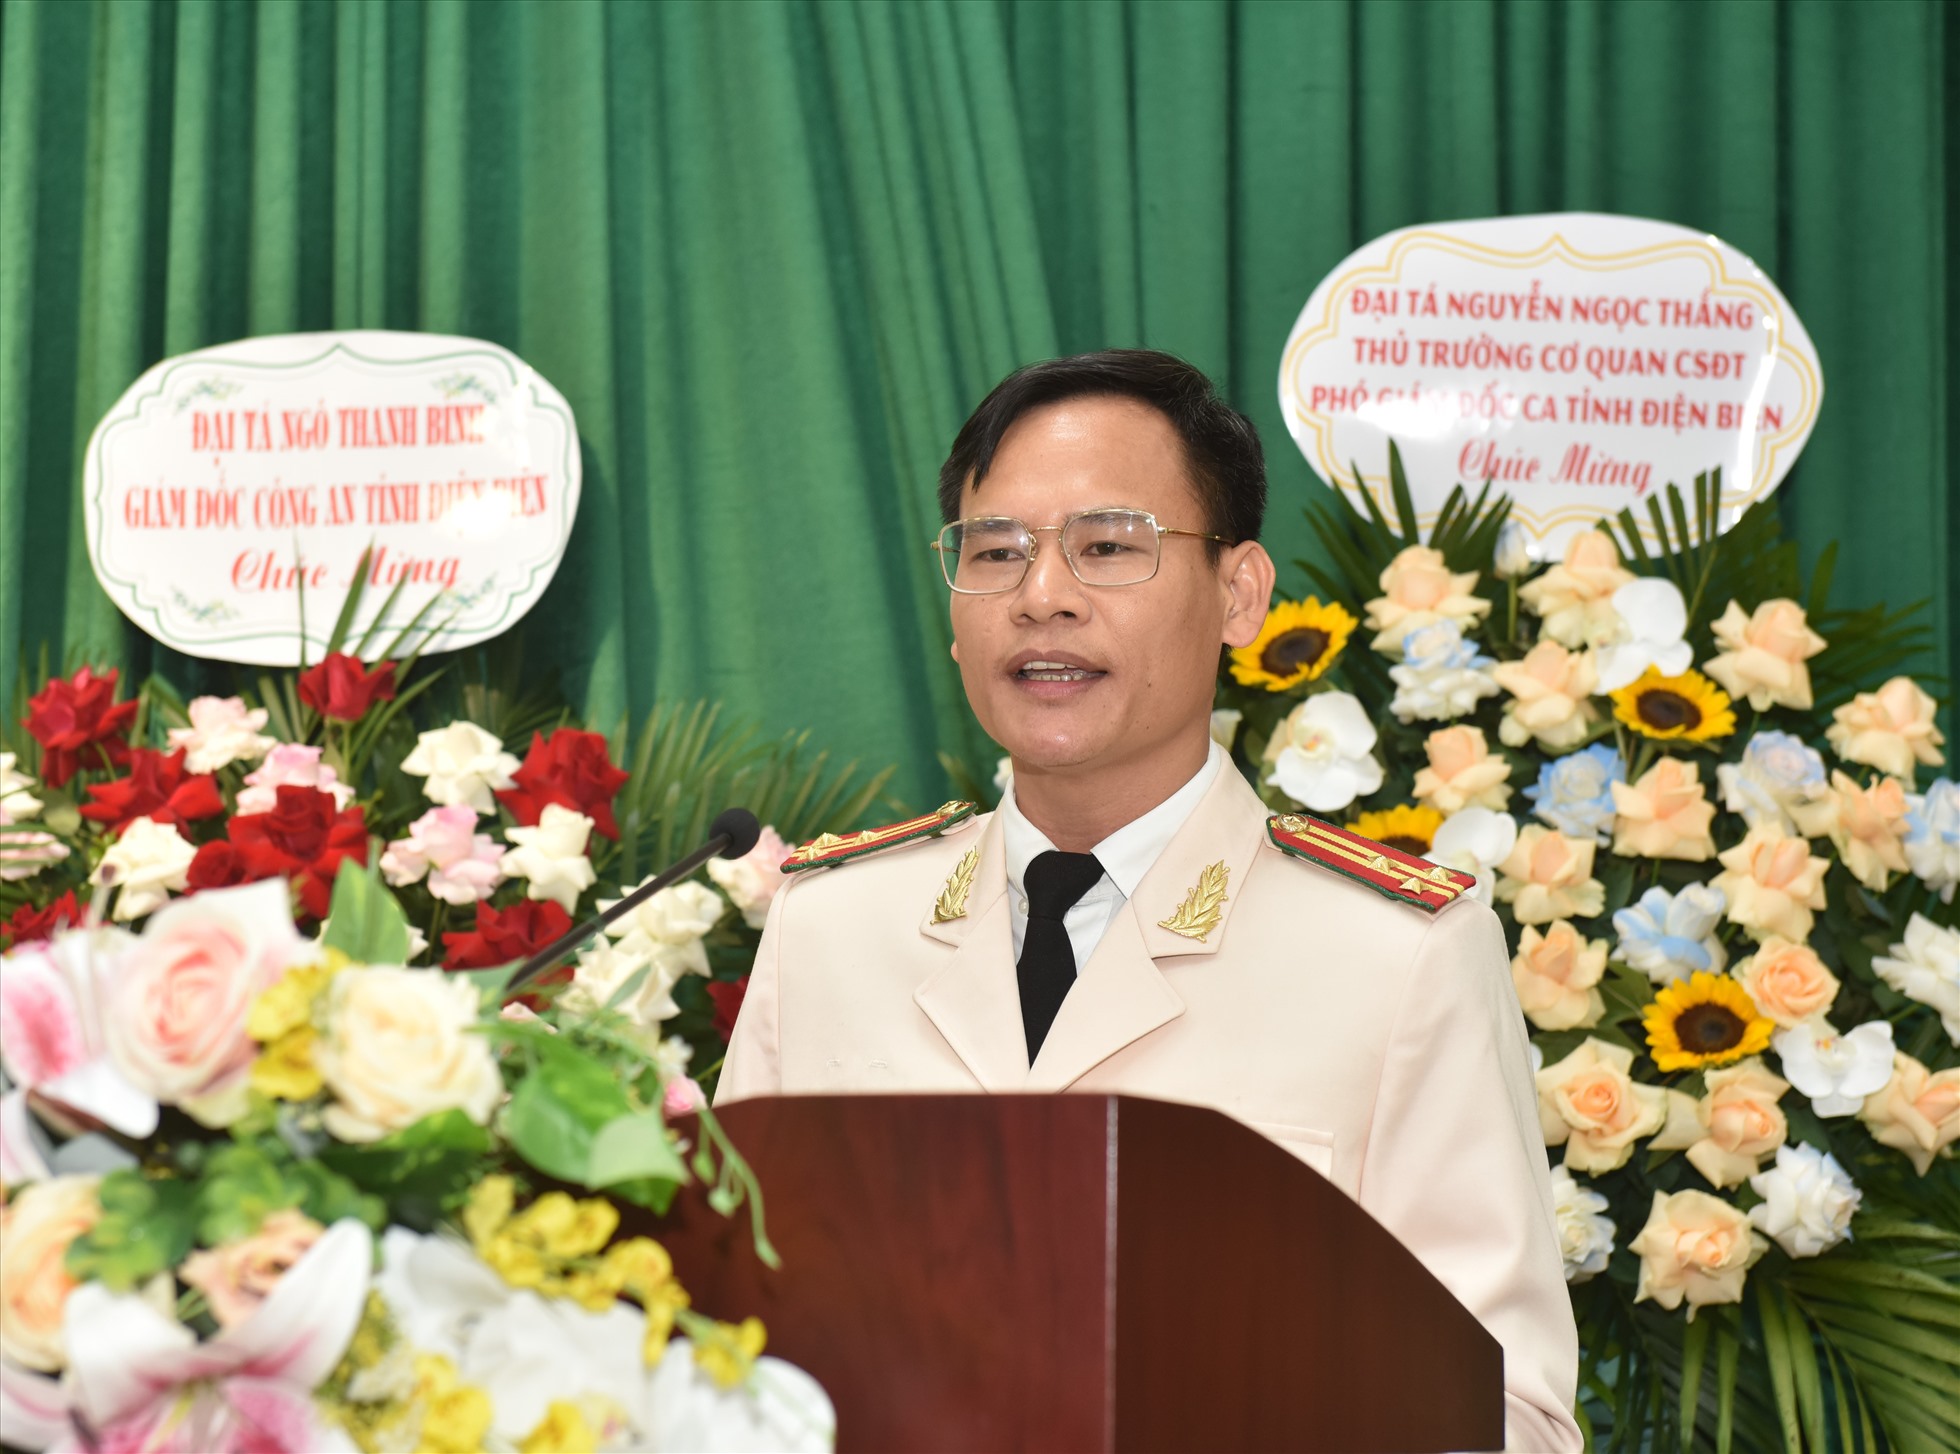 Thượng tá Nguyễn Văn Cường phát biểu sau khi nhận quyết định bổ nhiệm. Ảnh: H.Hà